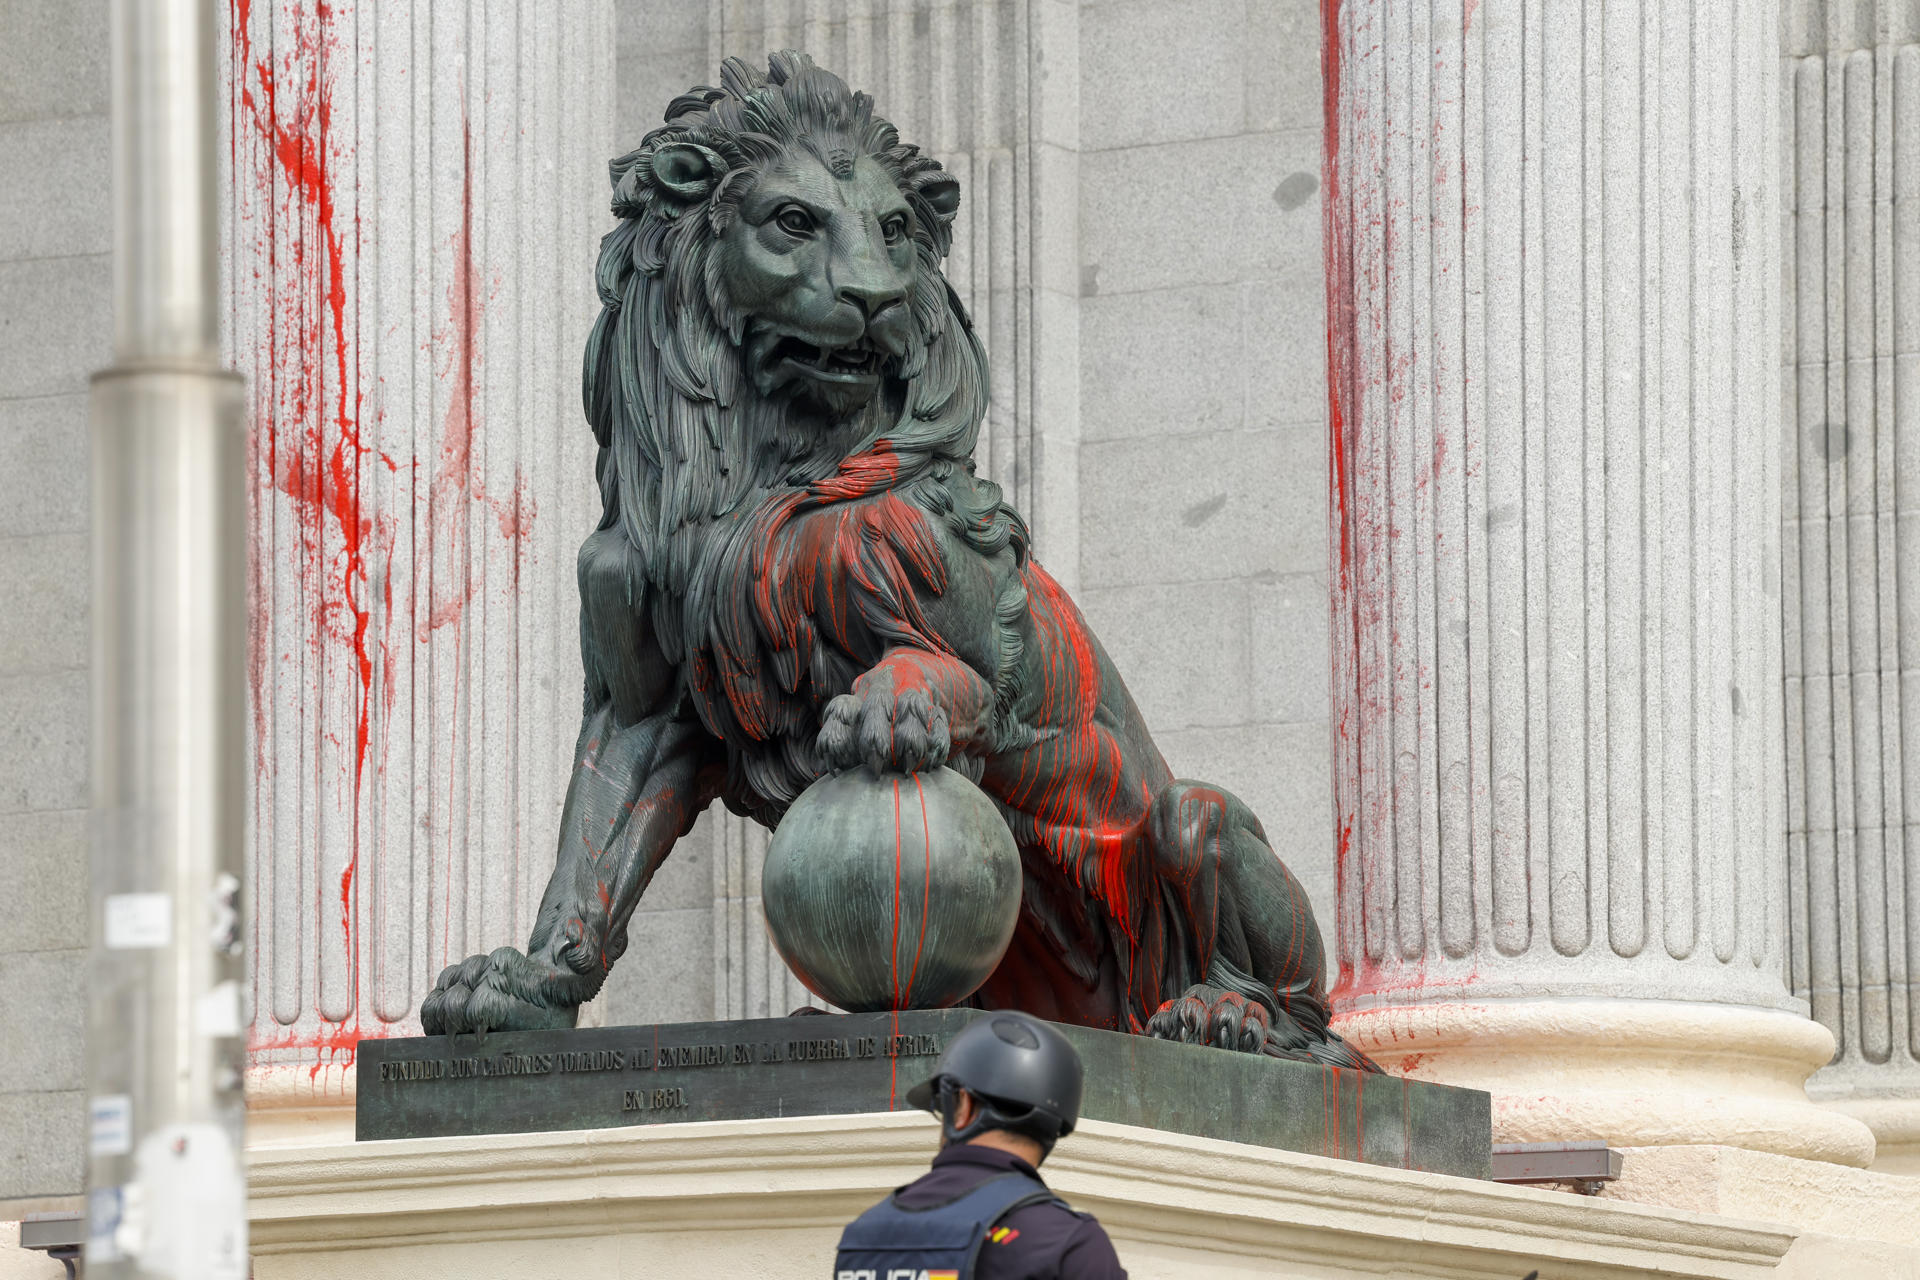 Lanzan pintura roja contra los leones en la entrada del Congreso.